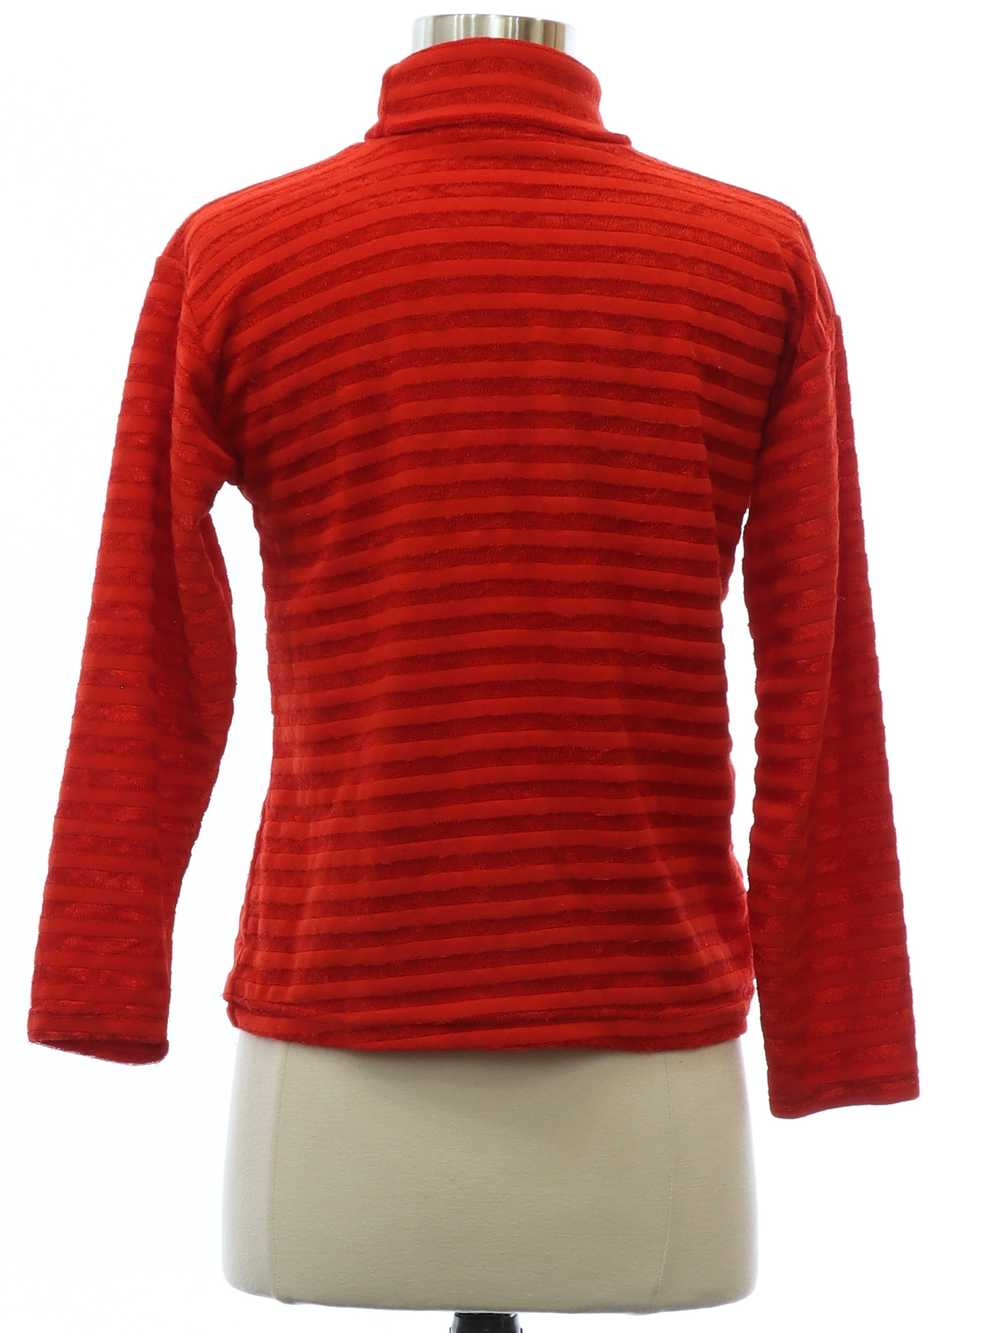 1970's Womens Mod Knit Shirt - image 3